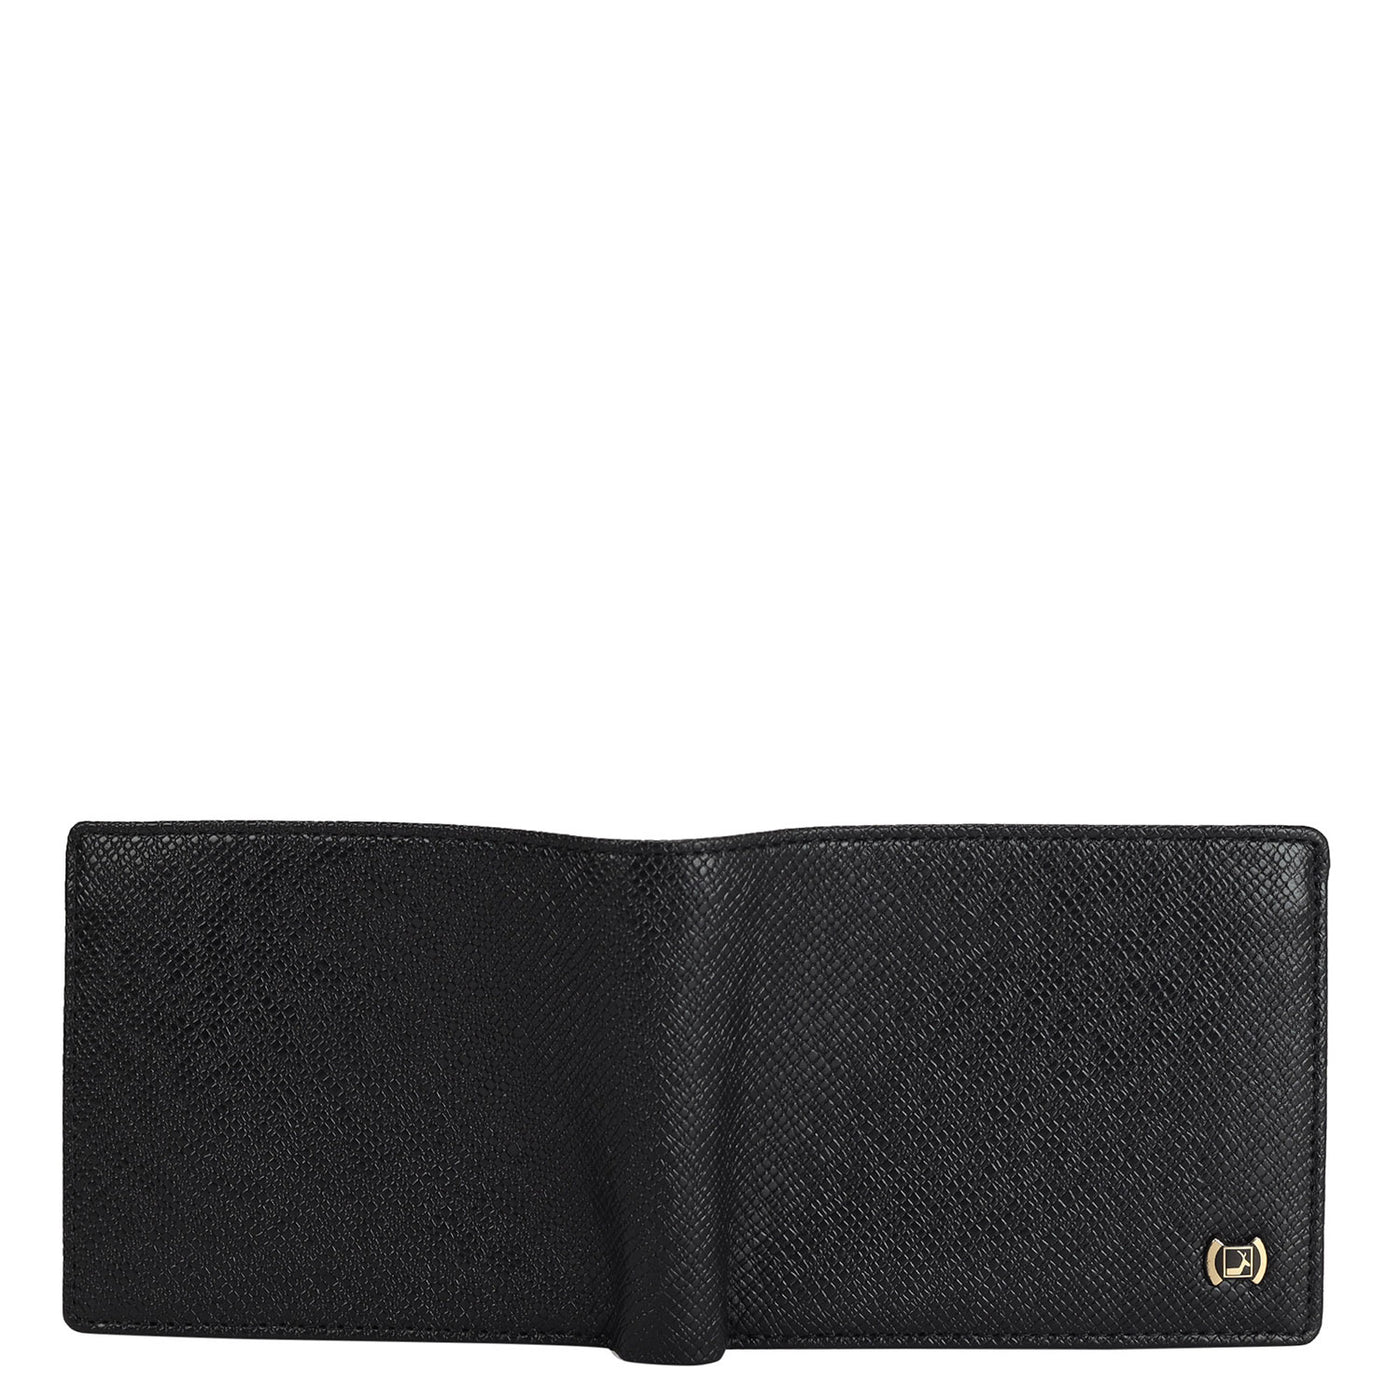 Black Franzy Leather Mens Wallet & Belt Gift Set